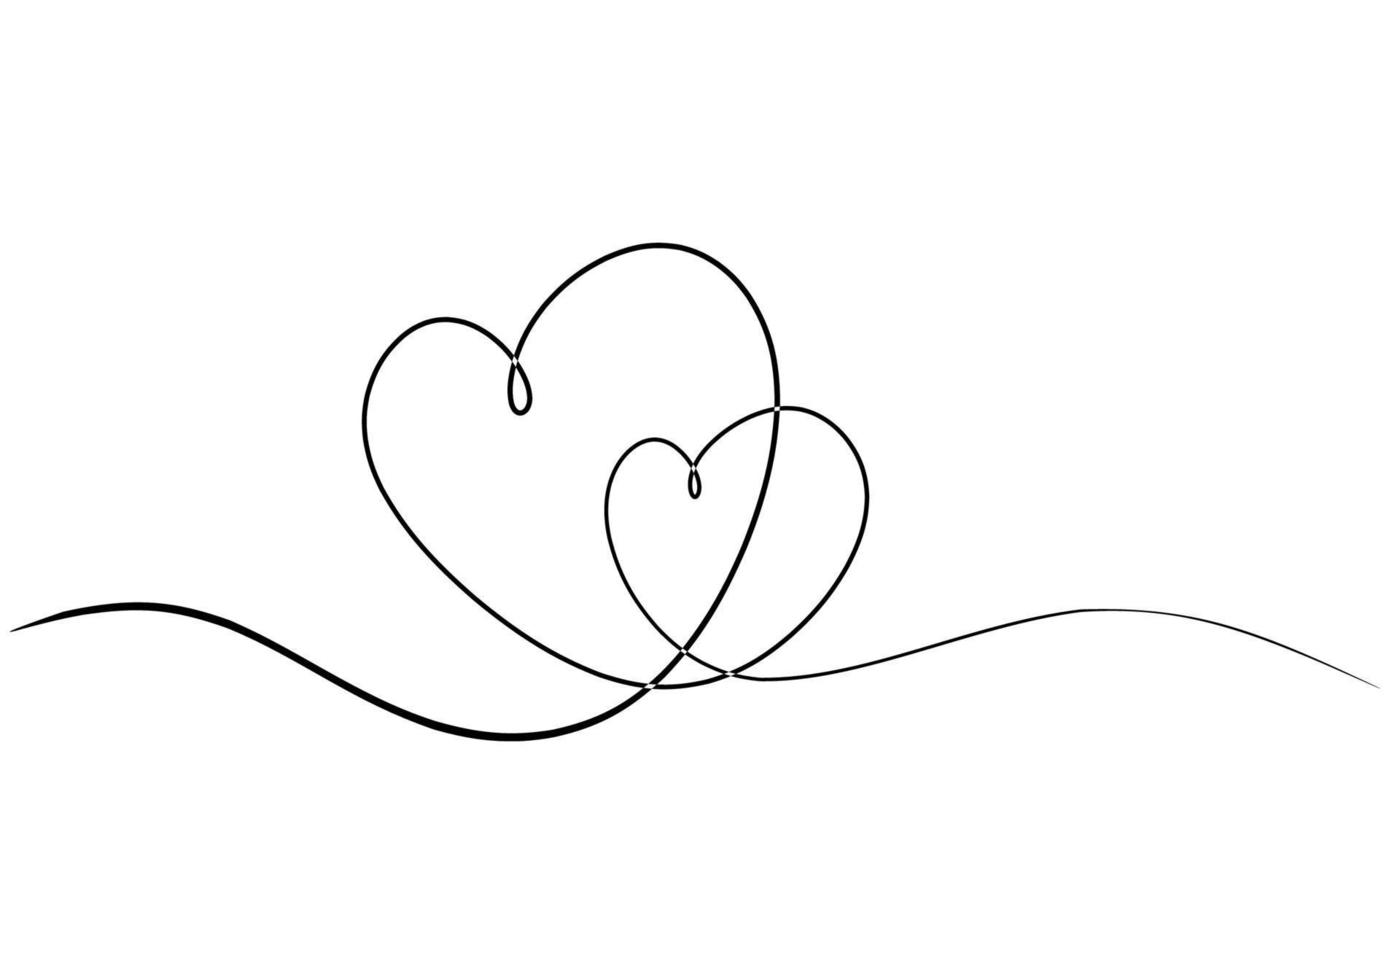 dibujo de líneas de corazón, símbolo romántico de pareja con una línea continua. vector